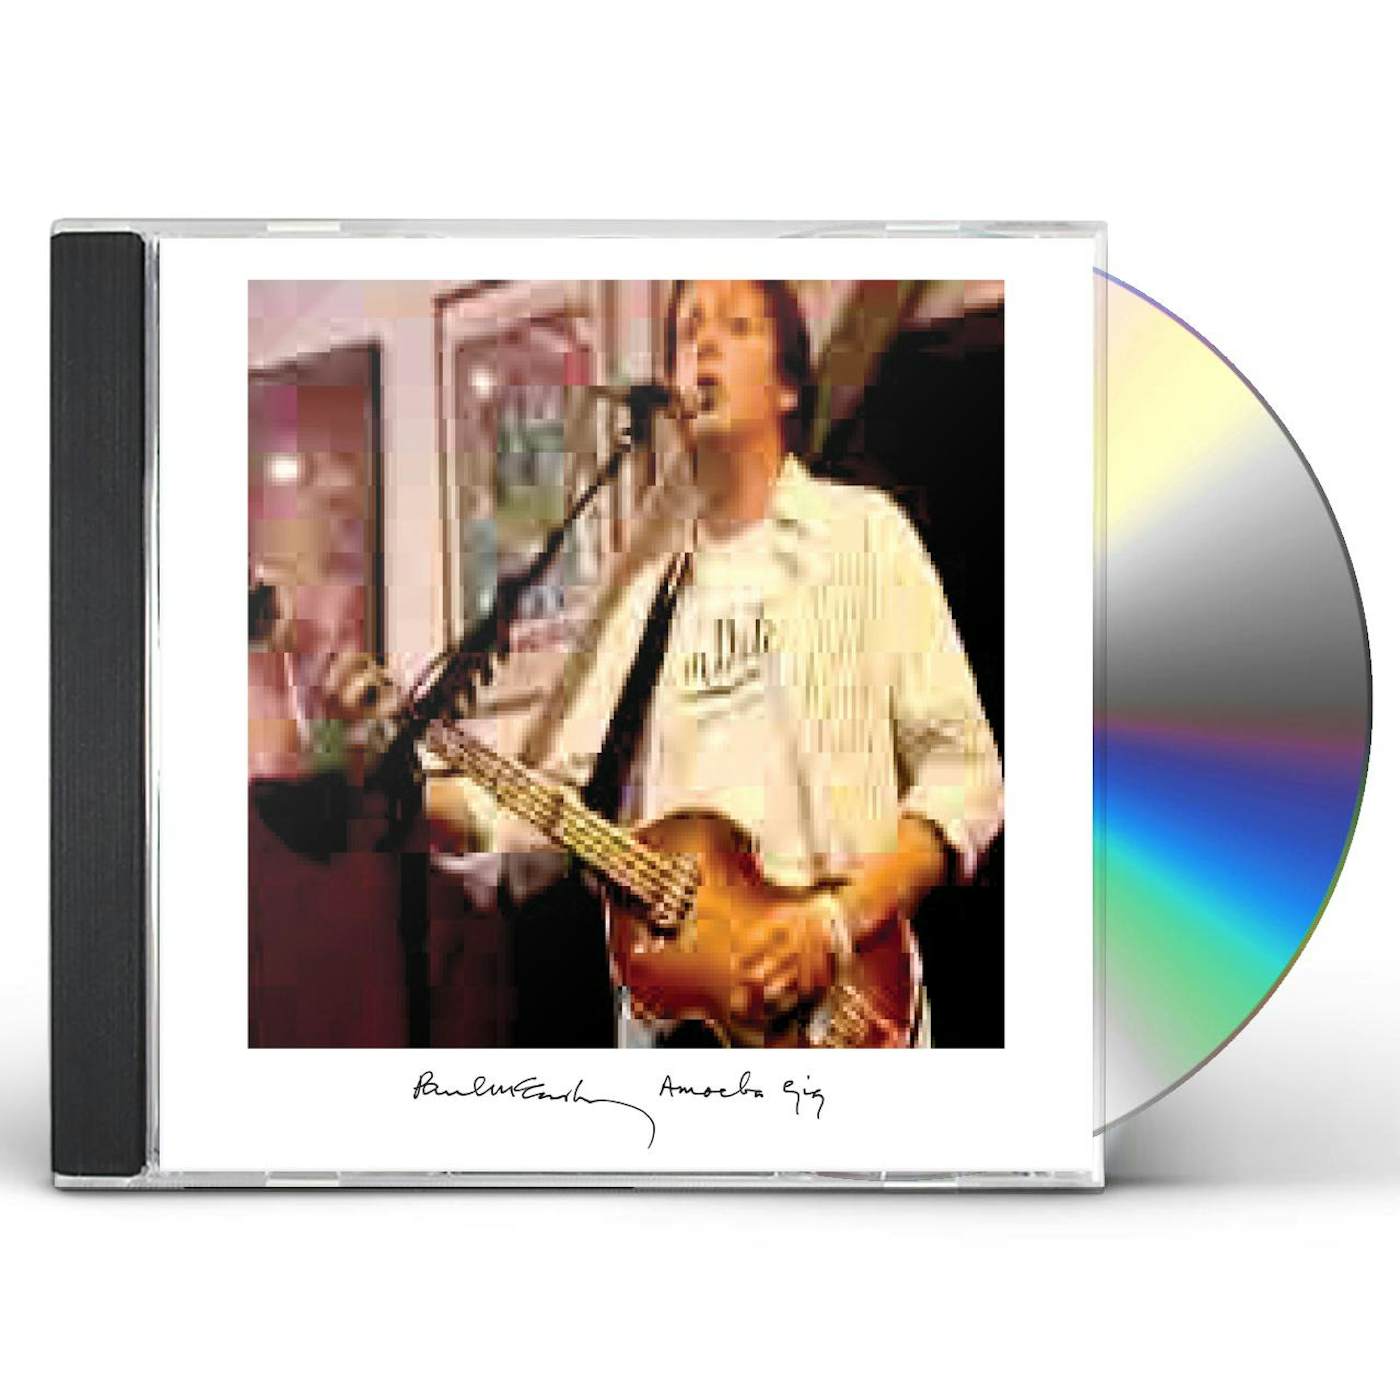 Paul McCartney AMOEBA GIG CD